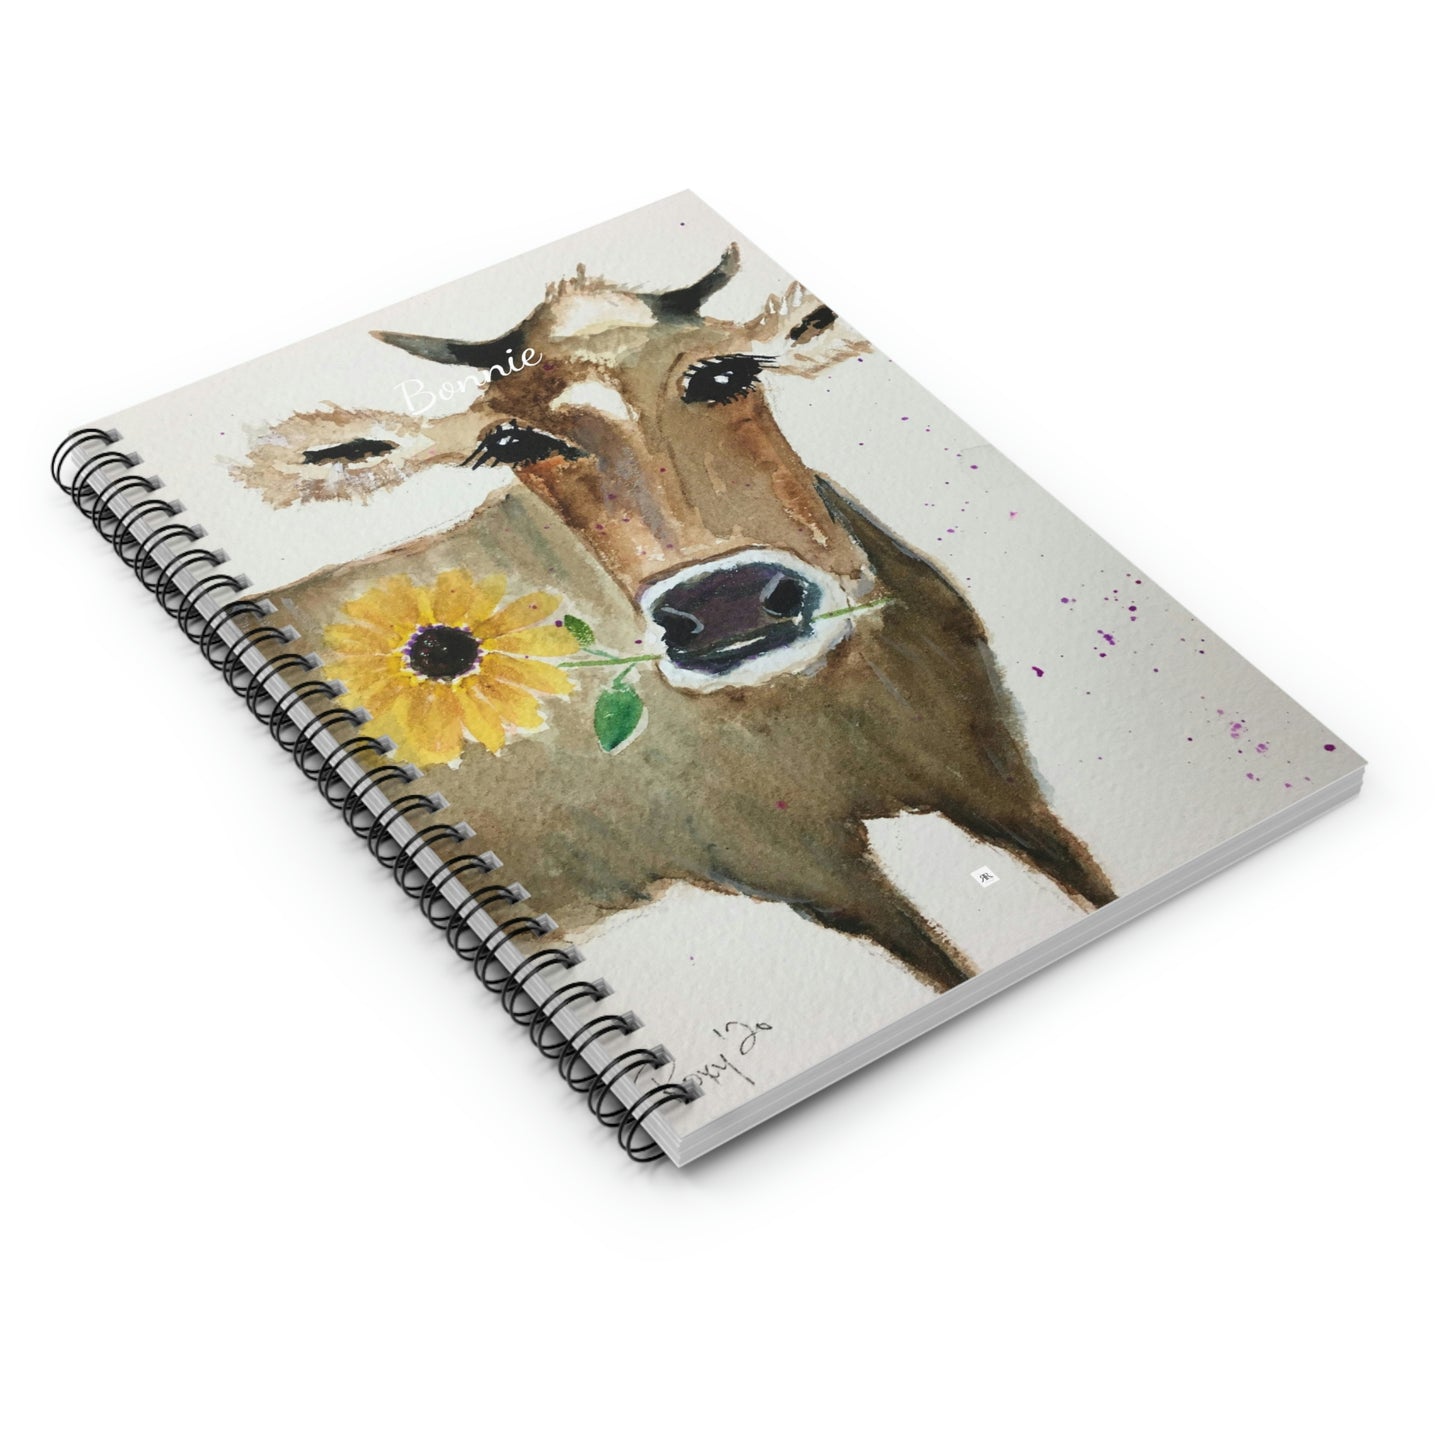 Bonnie - Peinture de vache fantaisiste Cahier à spirale